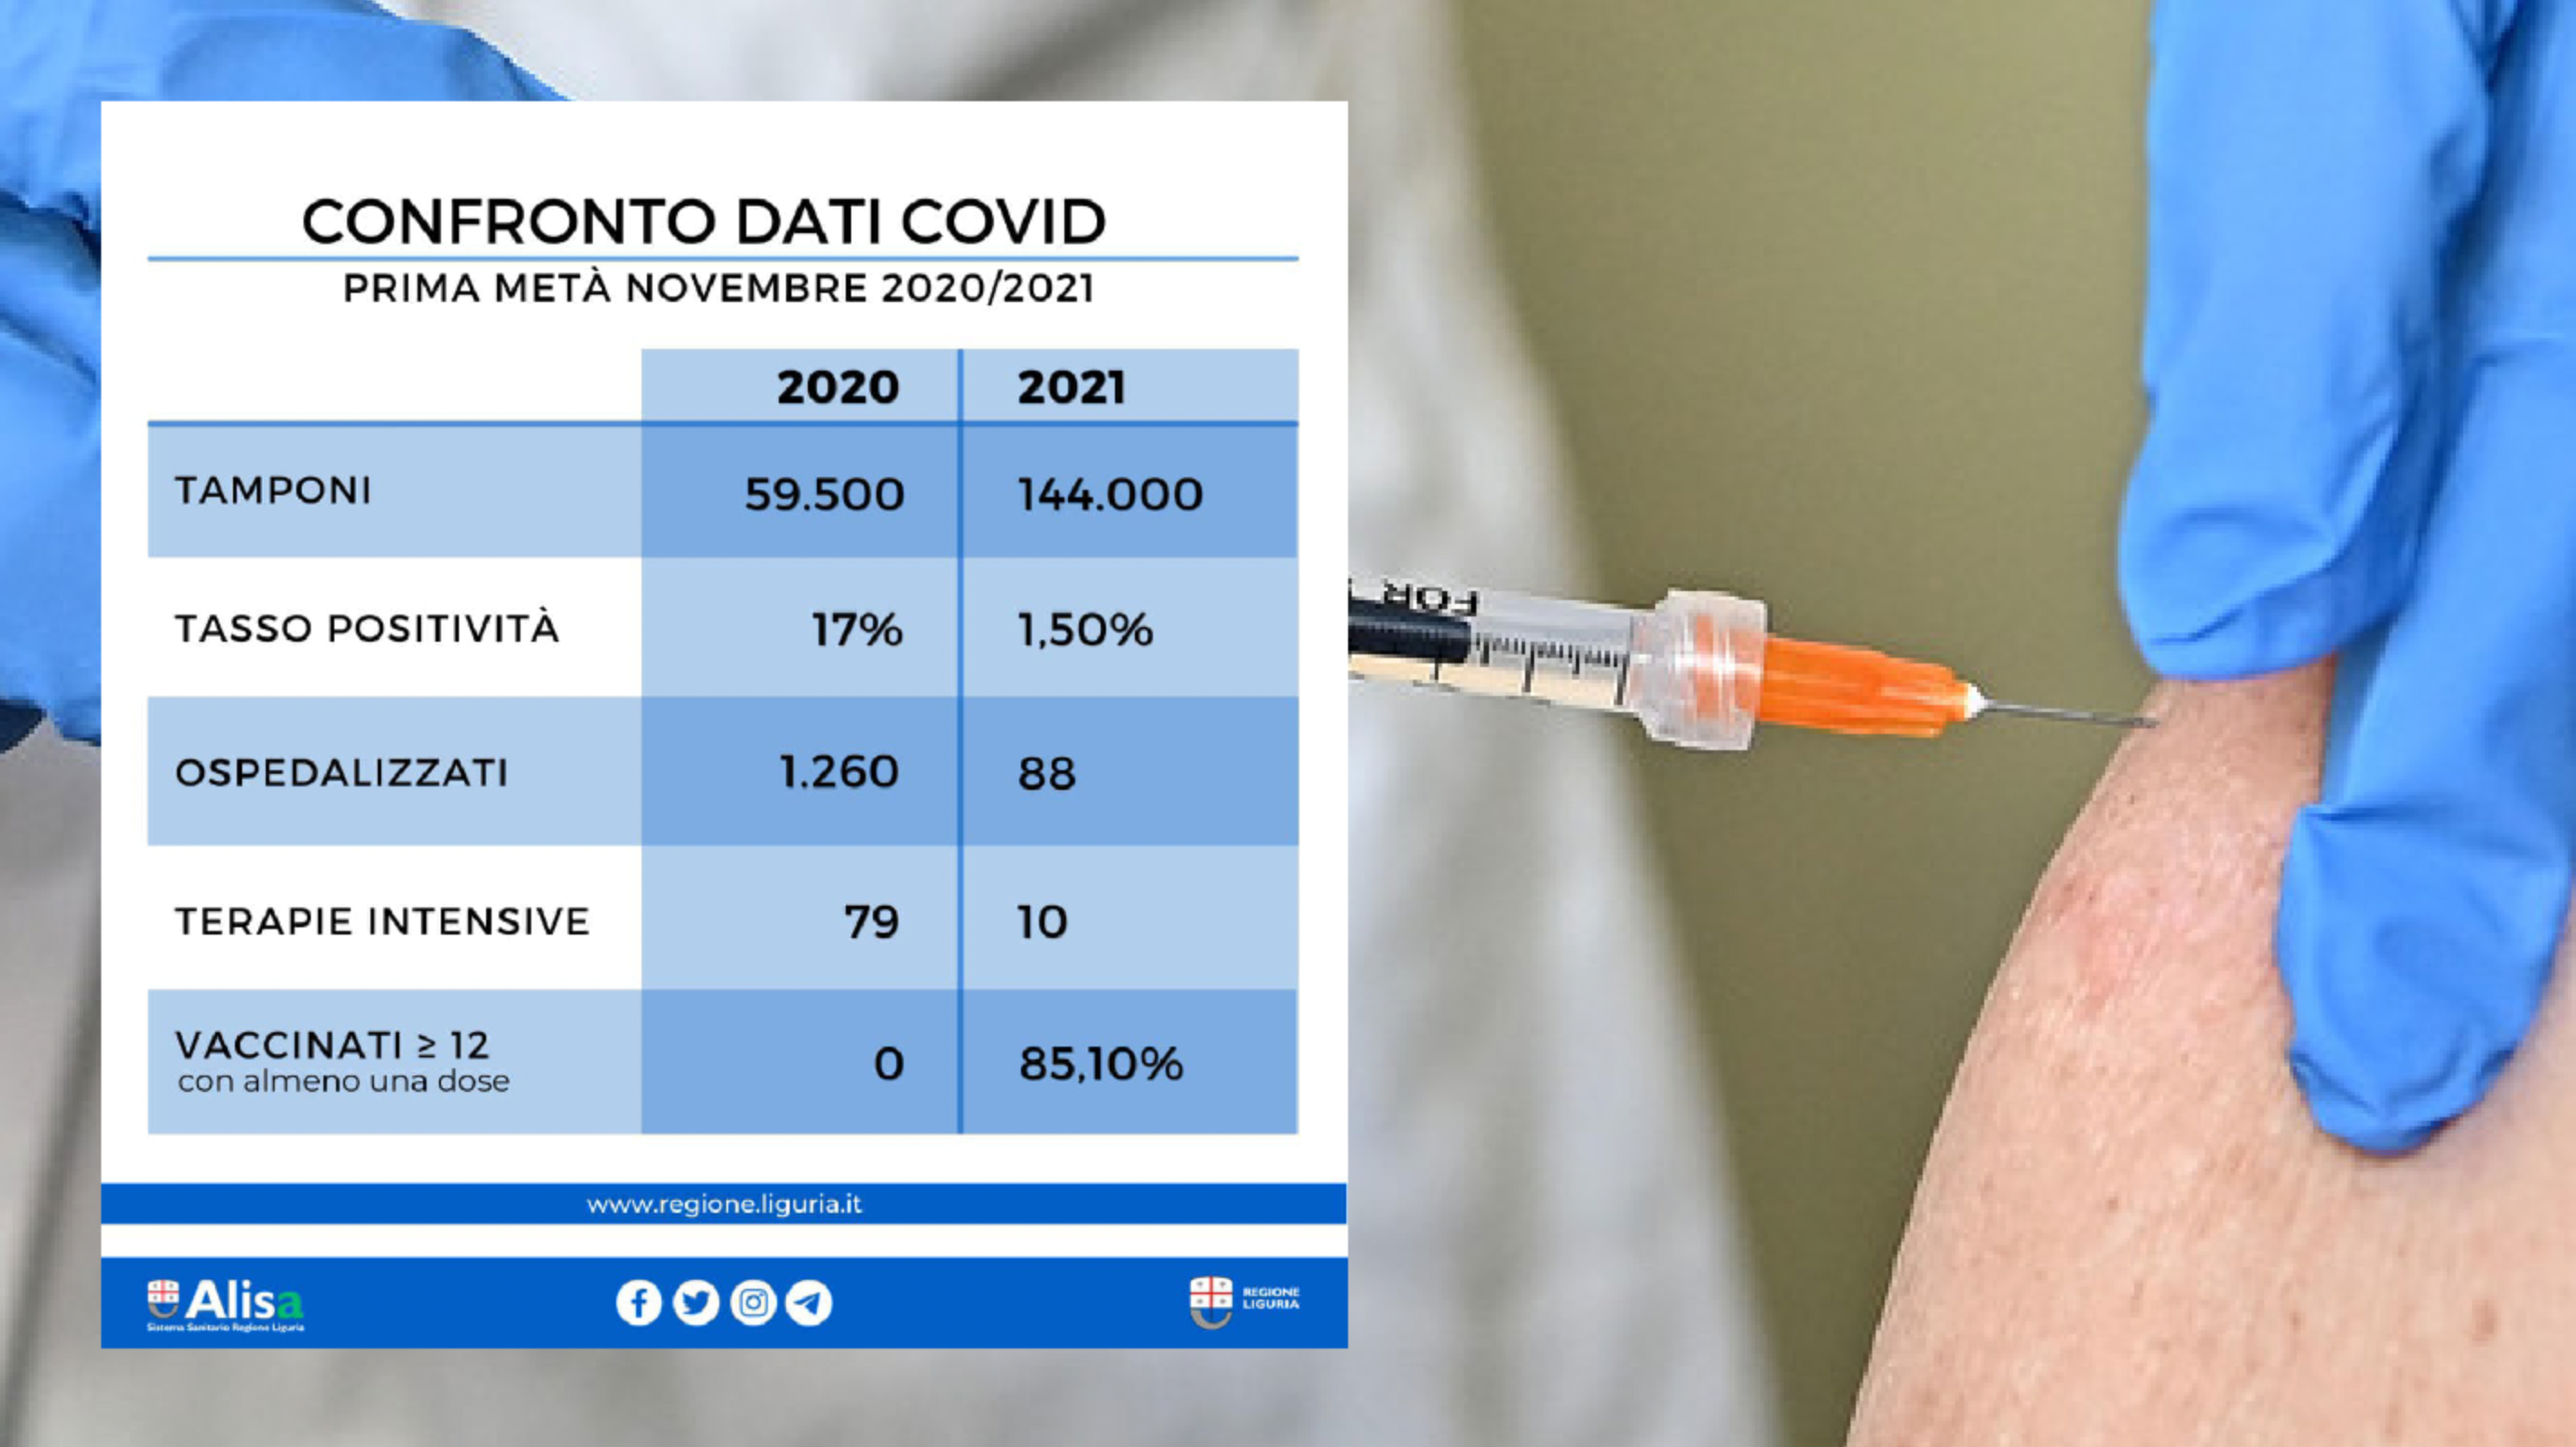 Vaccini, i dati a confronto: in un anno gli ospedalizzati passano da 1260 a 80